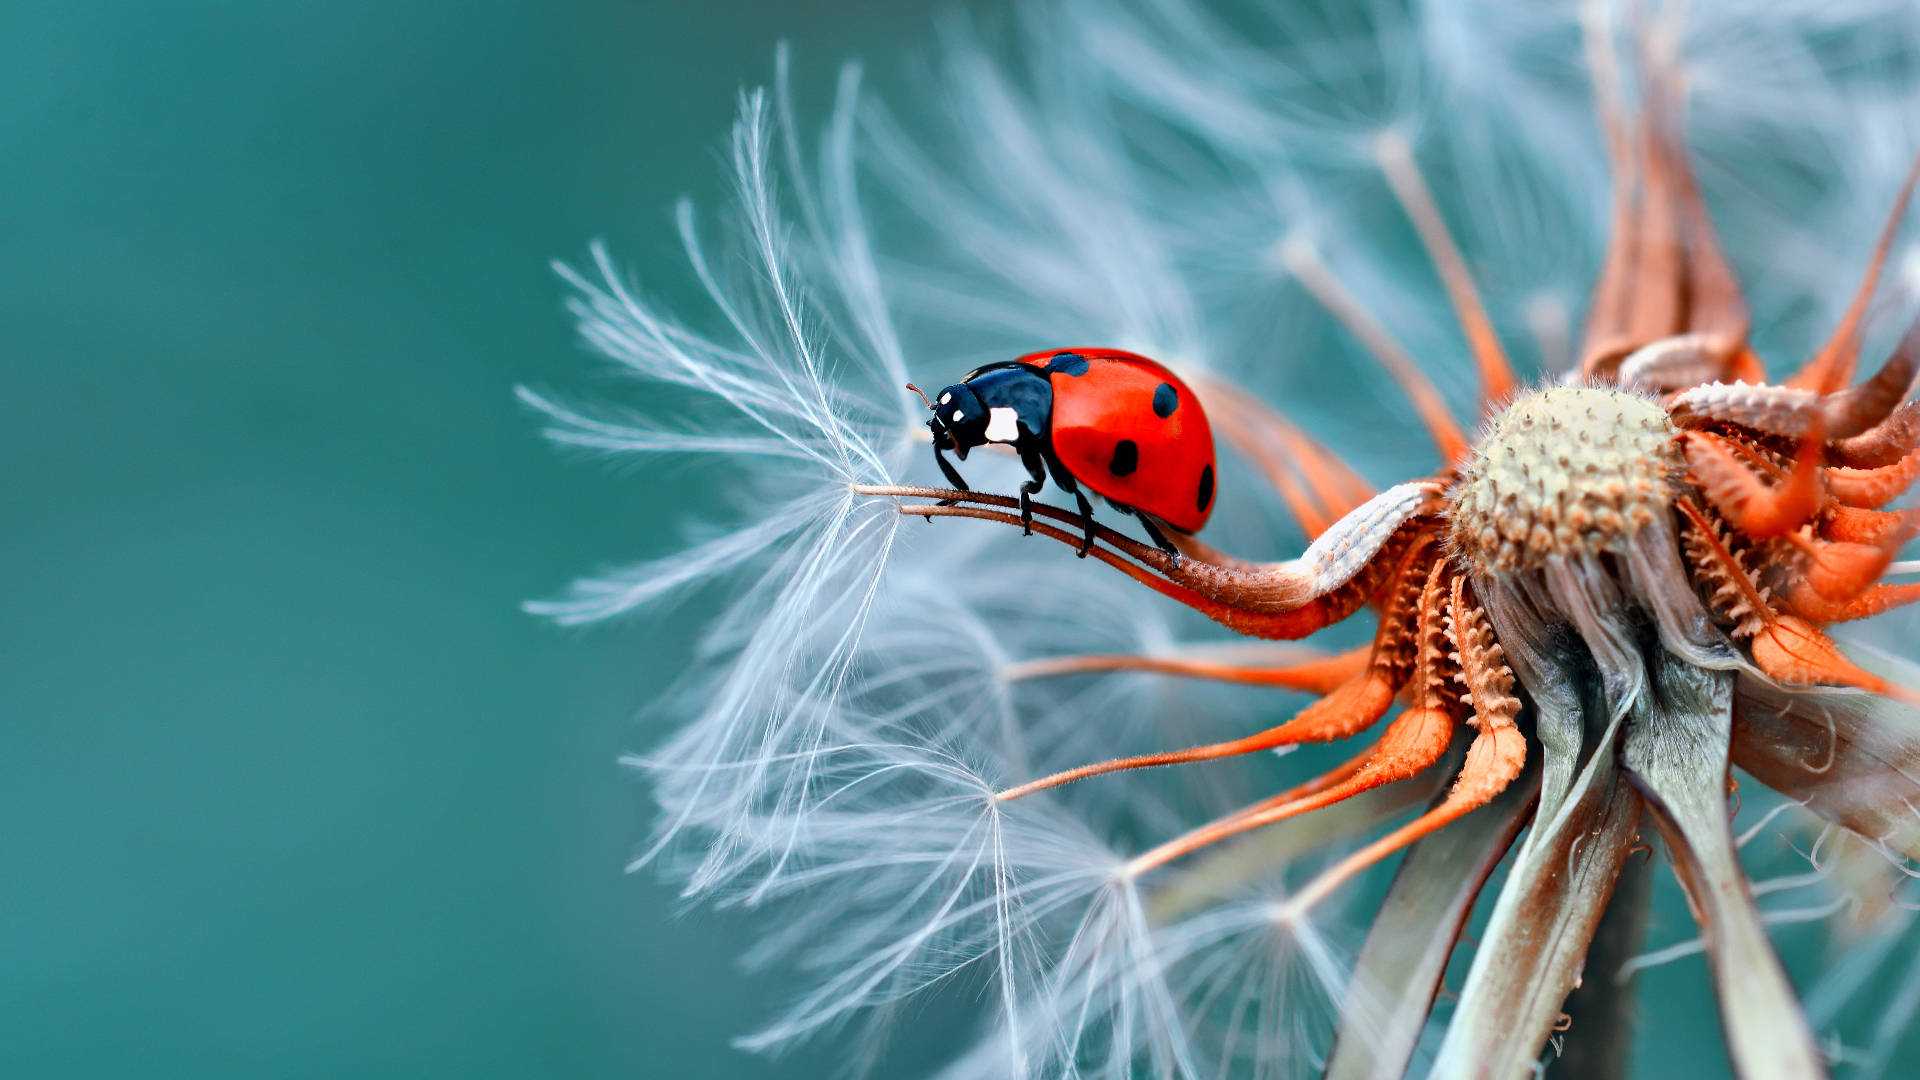 Yahoo Ladybug On Flower Background